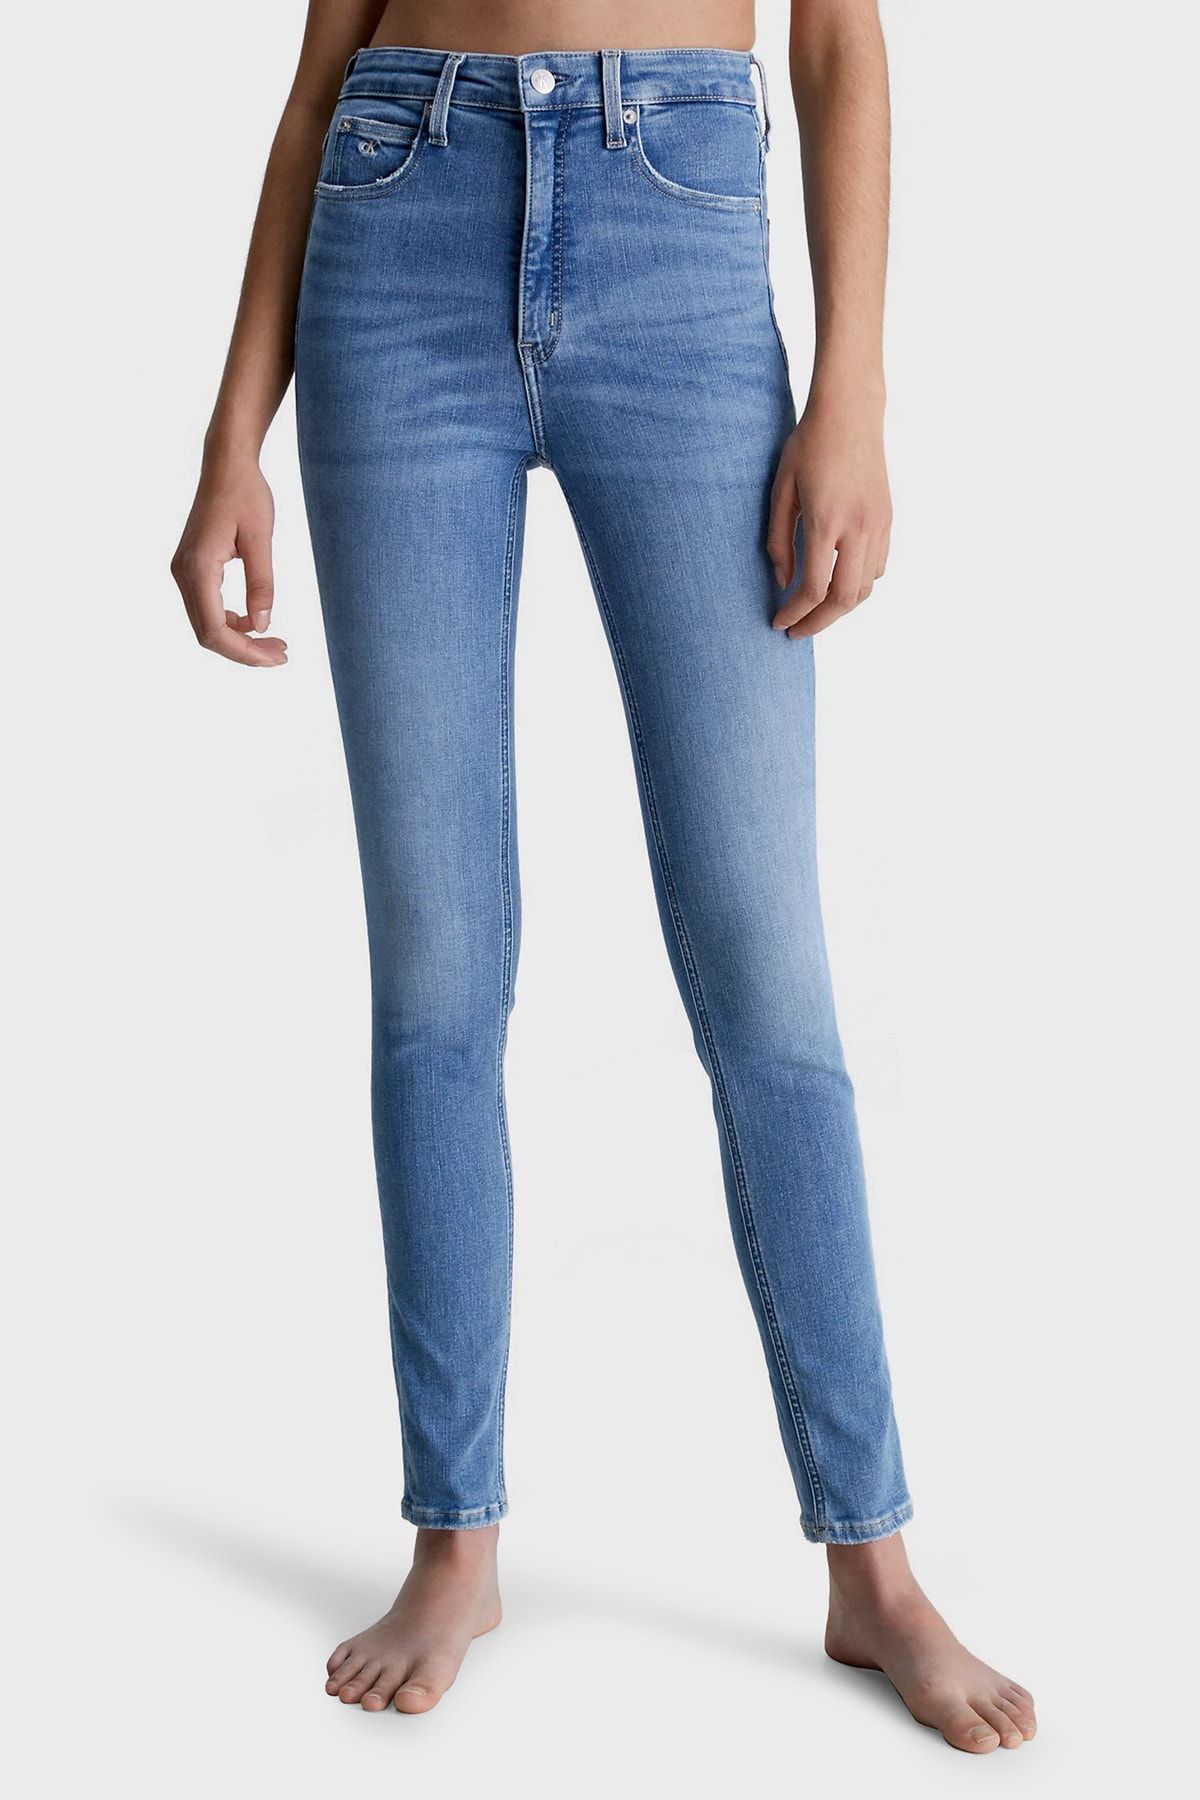 Calvin Klein Pamuklu Yüksek Bel Dar Paça Skinny Fit Jeans Kot Pantolon J20j22062